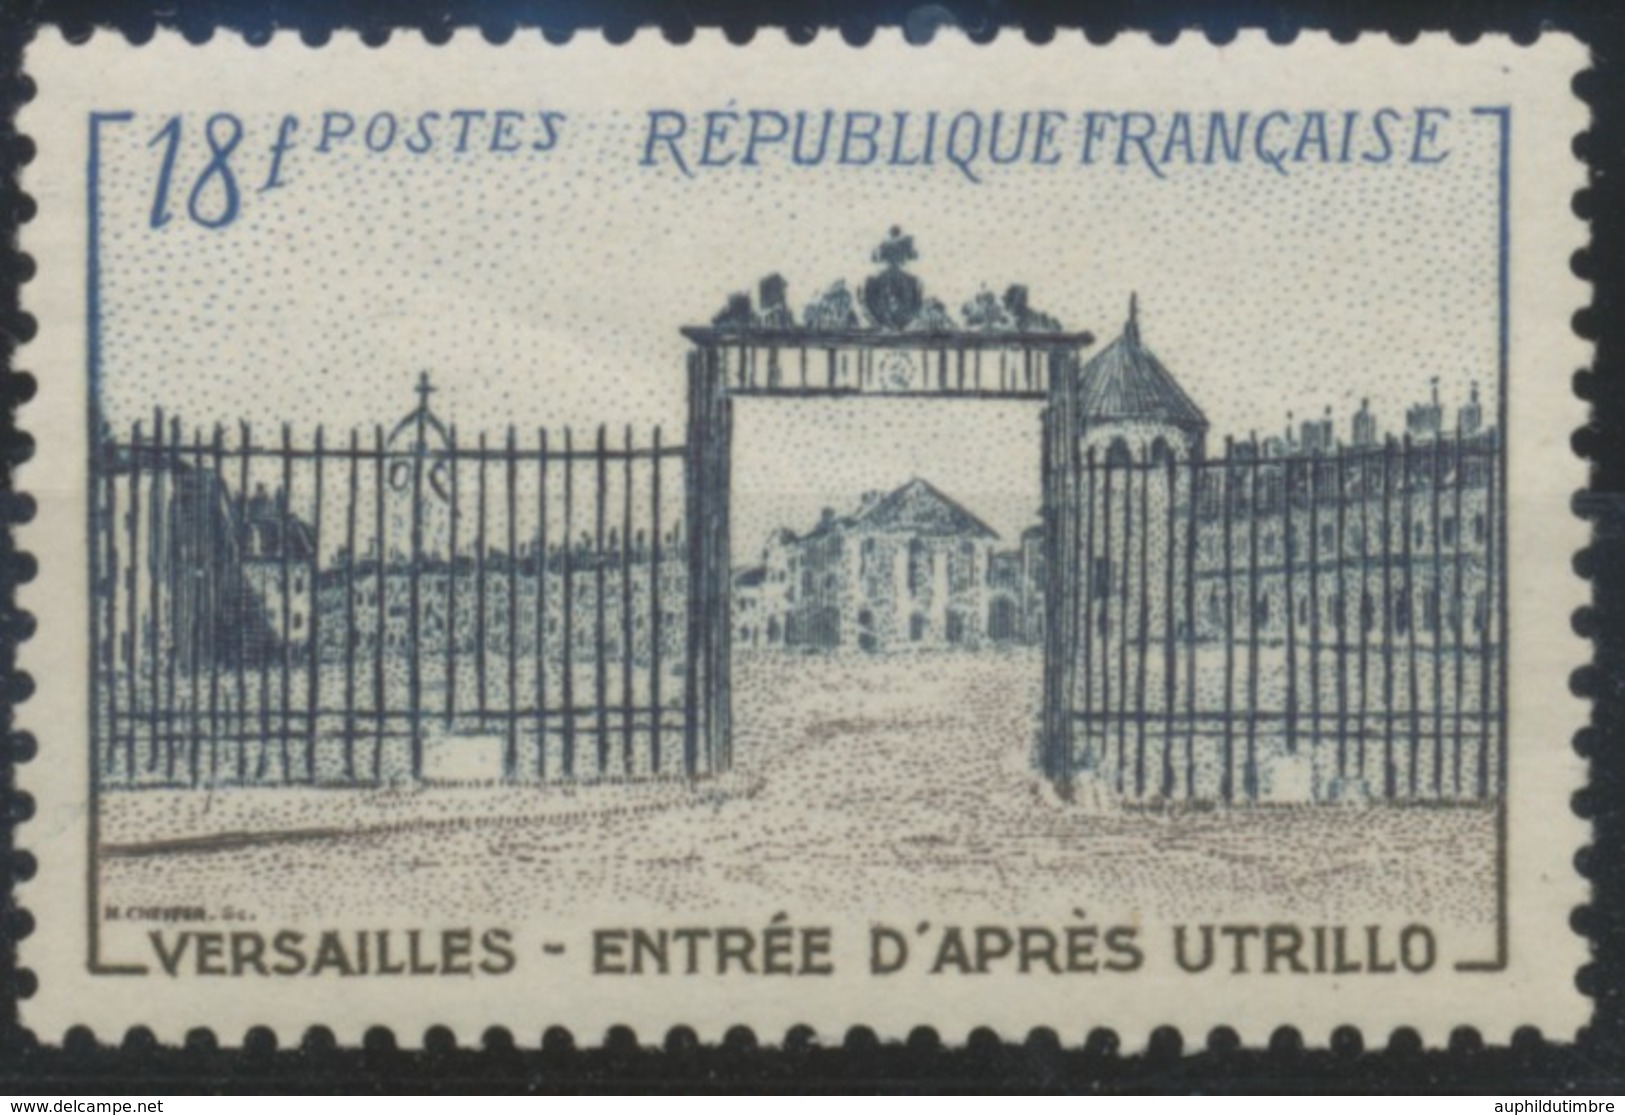 Grille D'entrée Du Château De Versailles. Type De 1952 (no 939) 18f. Brun-lilas, Bleu-noir Et Bleu. Neuf Luxe ** Y988 - Ongebruikt